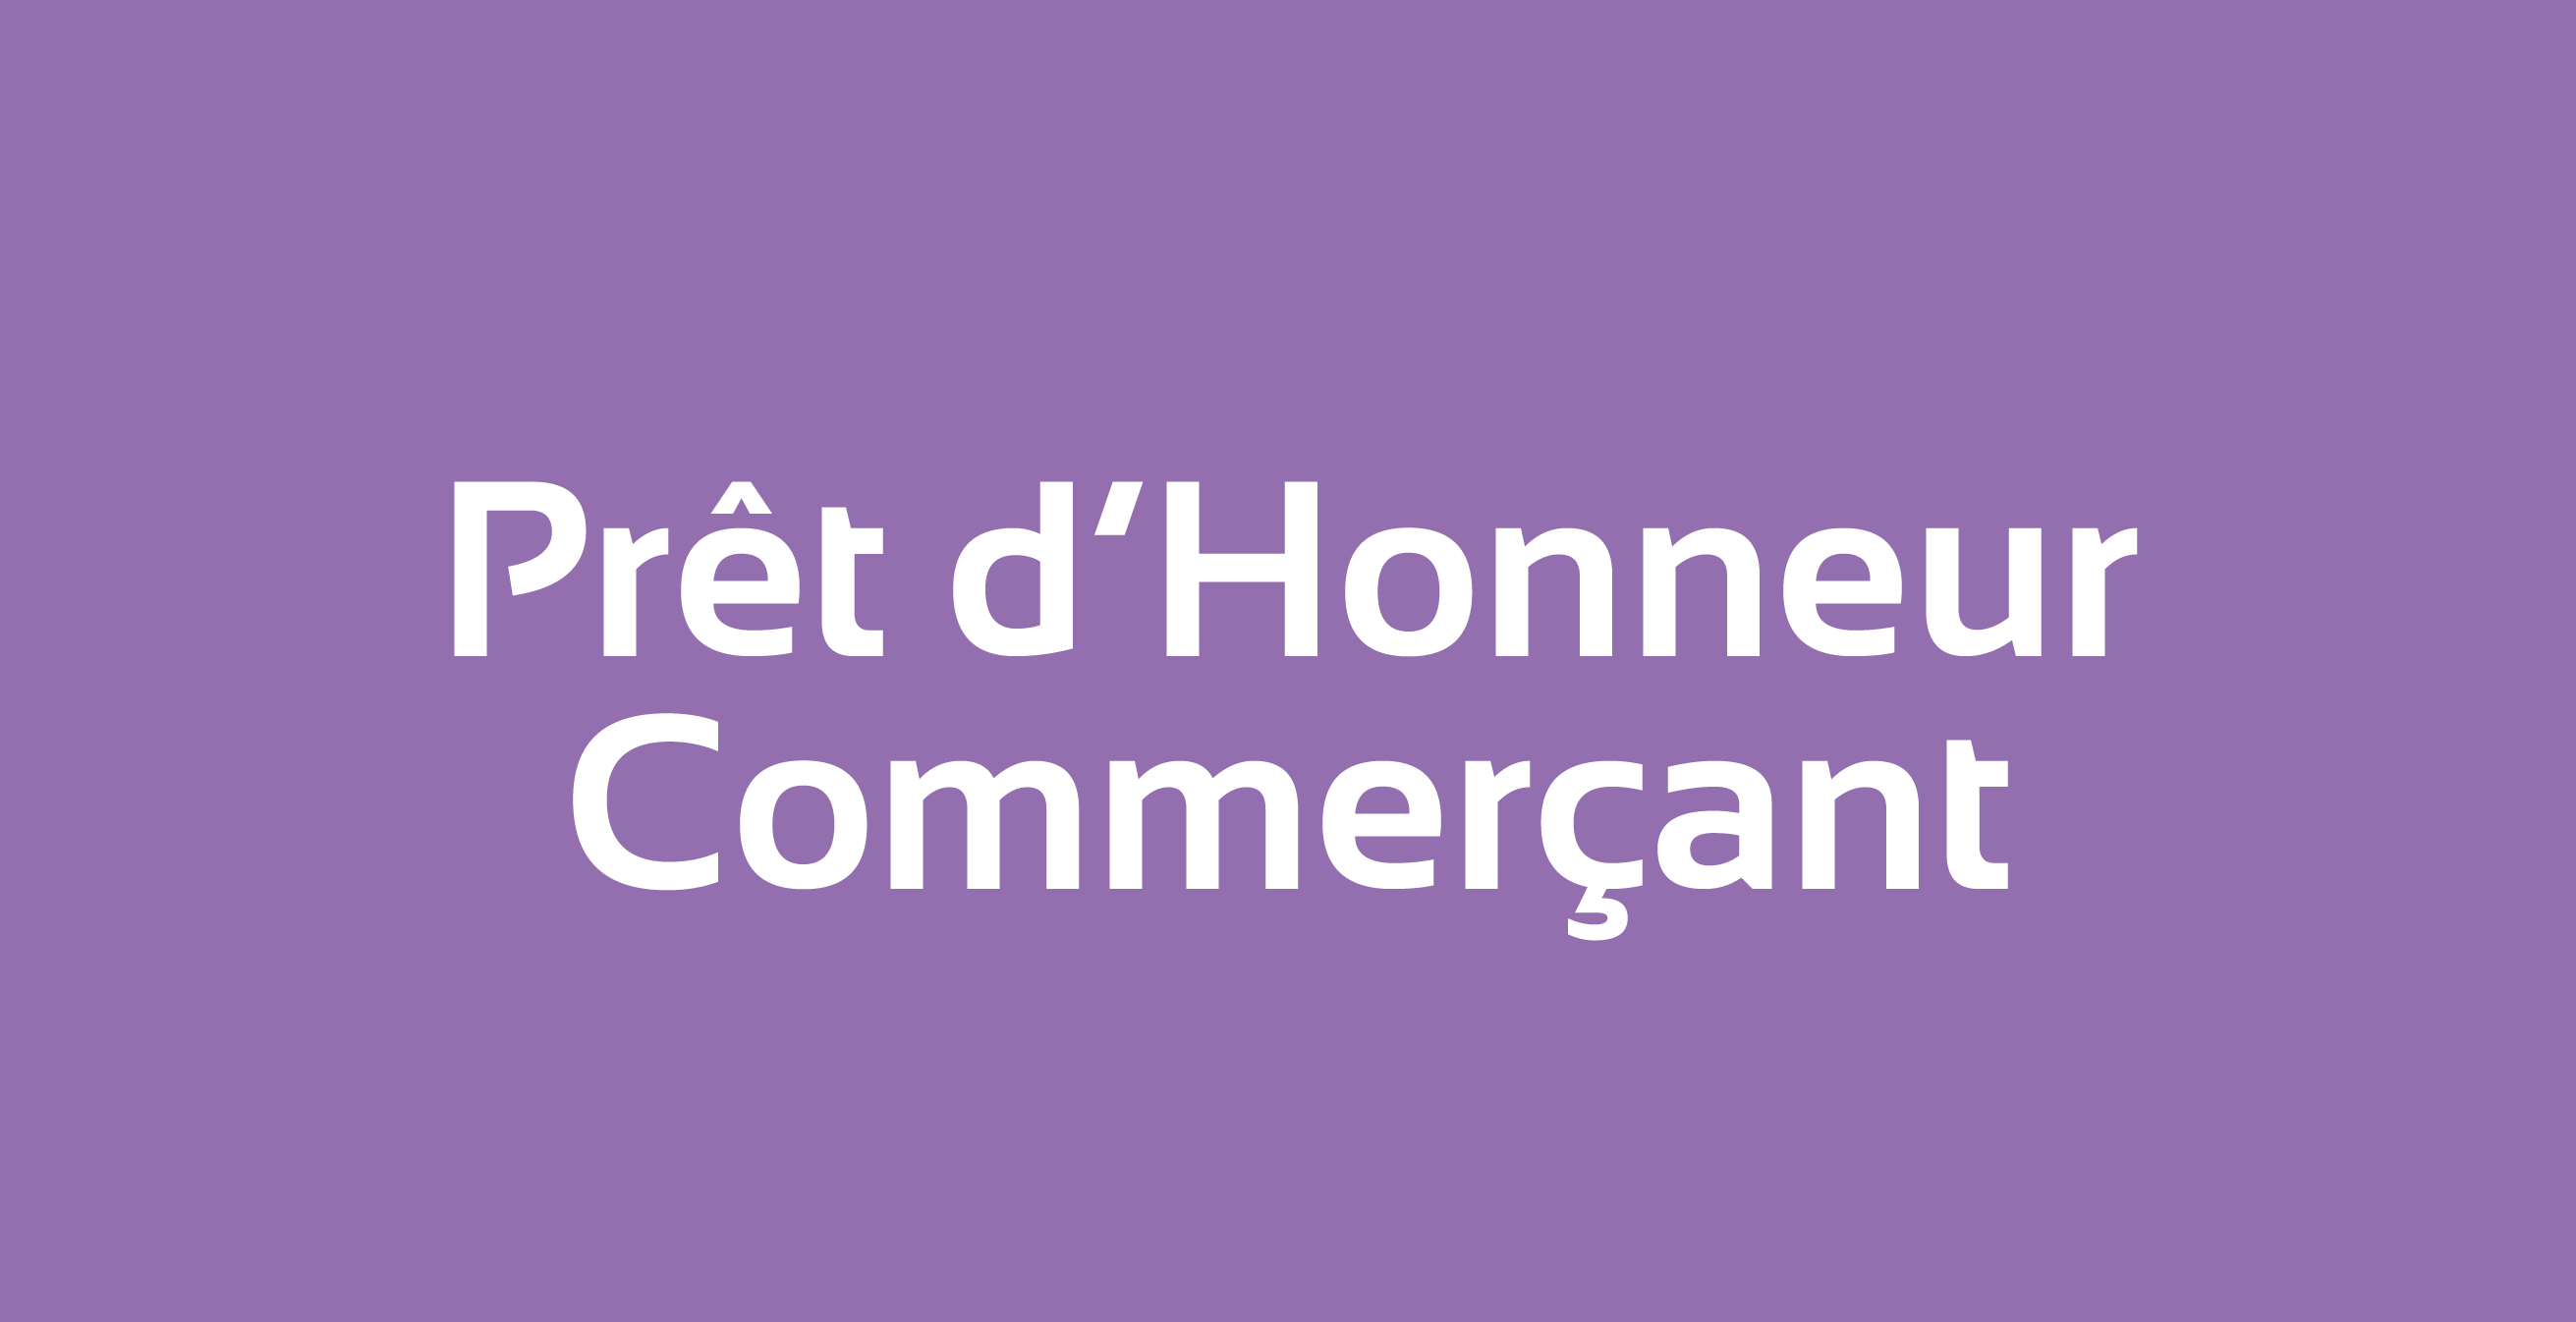 Pret_dHonneur_Commercant_site.png